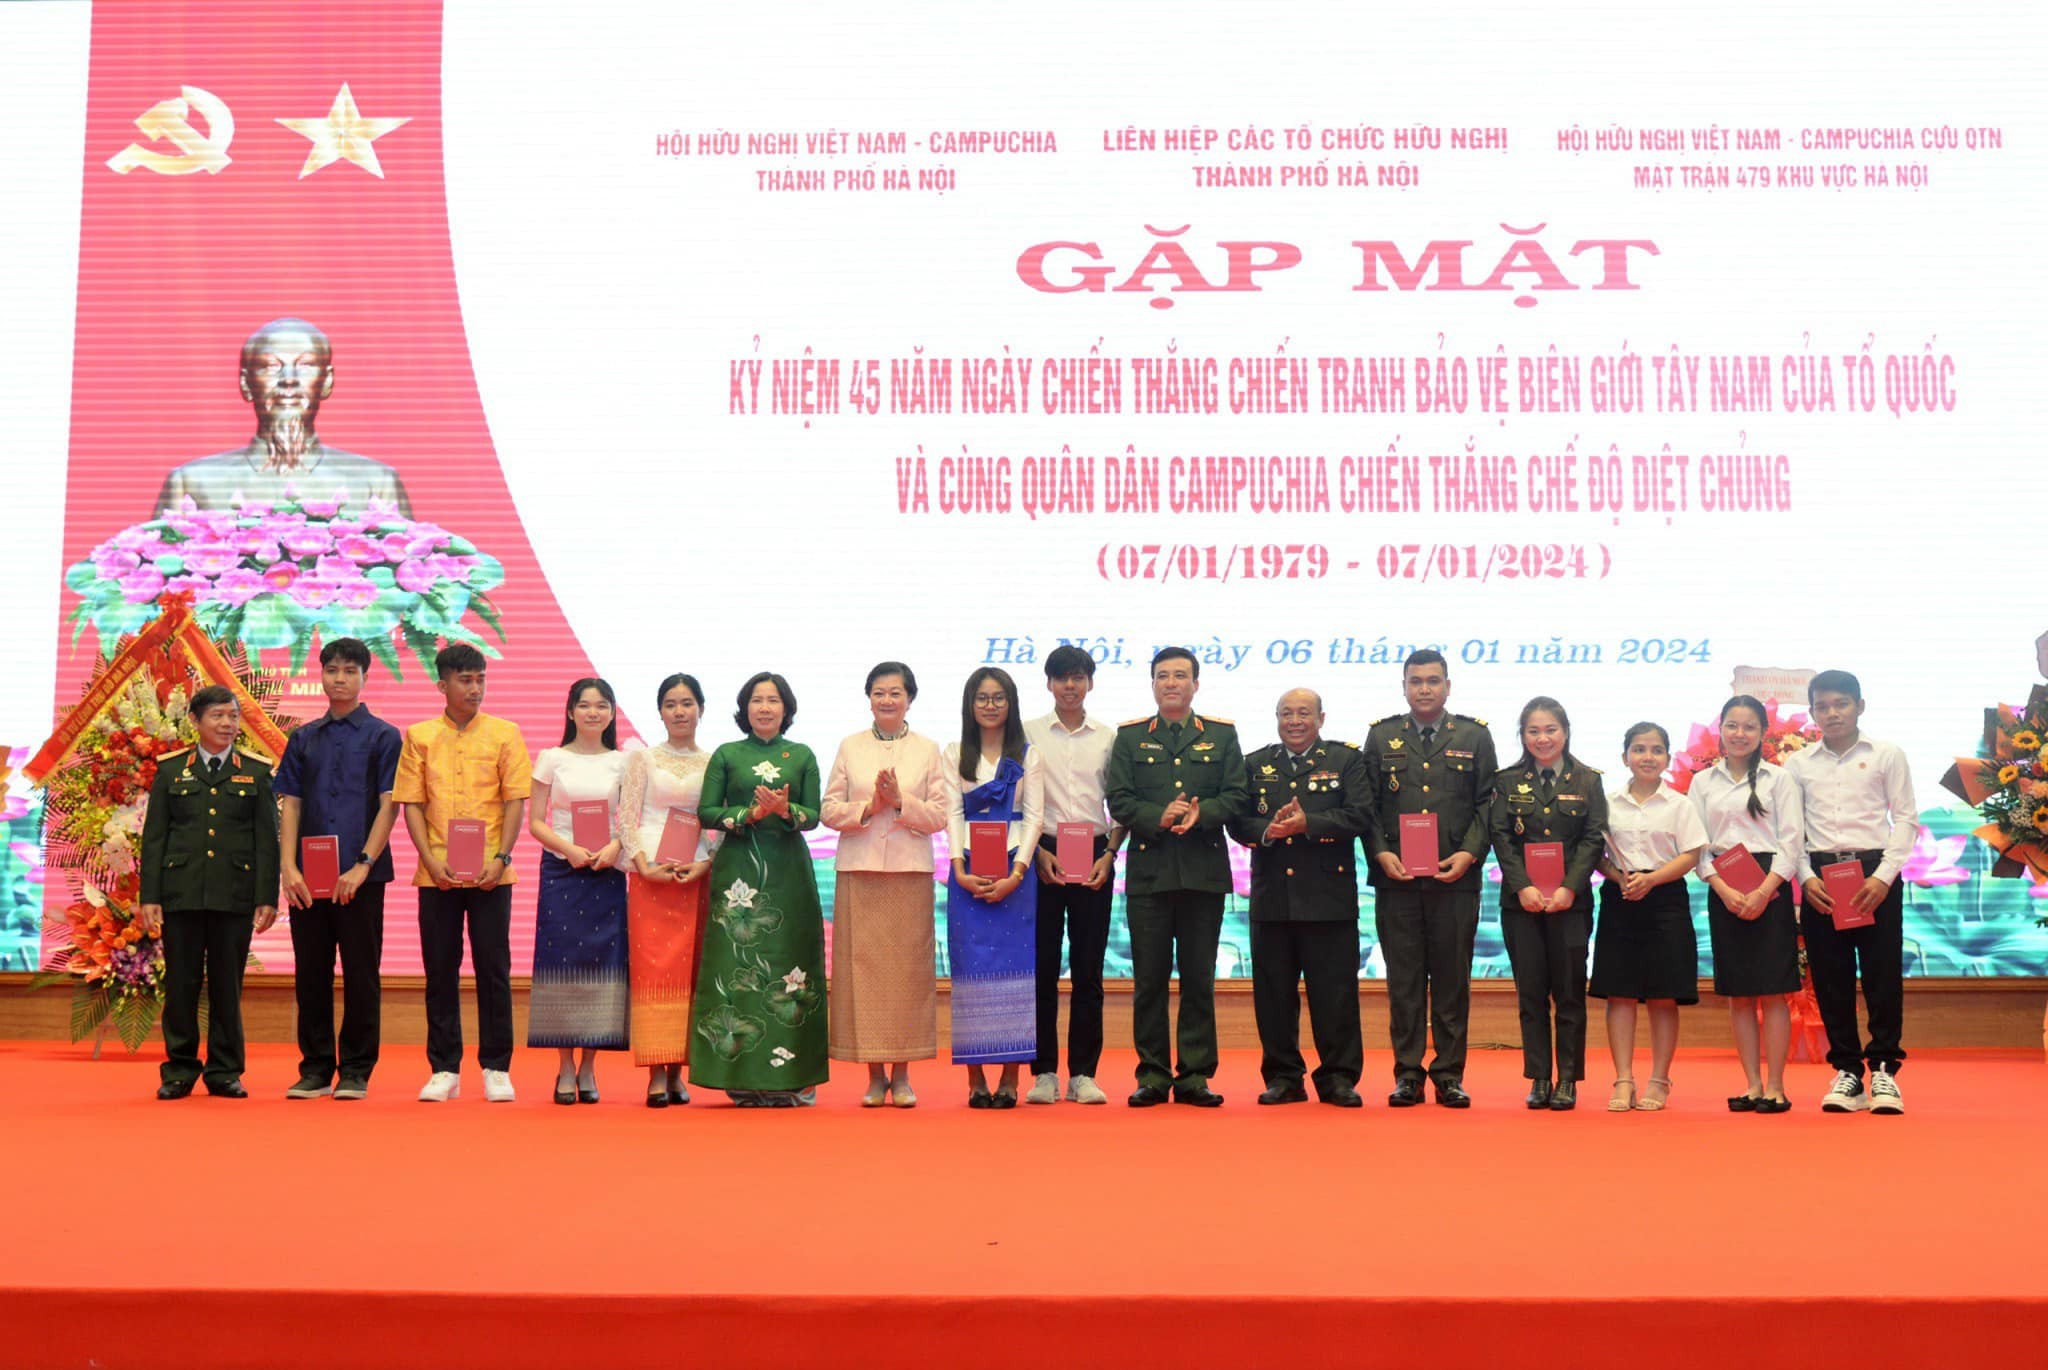 Ban tổ chức đã trao 50 suất quà tặng các cựu chiến binh, cựu quân tình nguyện, cựu chuyên gia và đại diện lưu học sinh, sinh viên Campuchia tại Việt Nam.